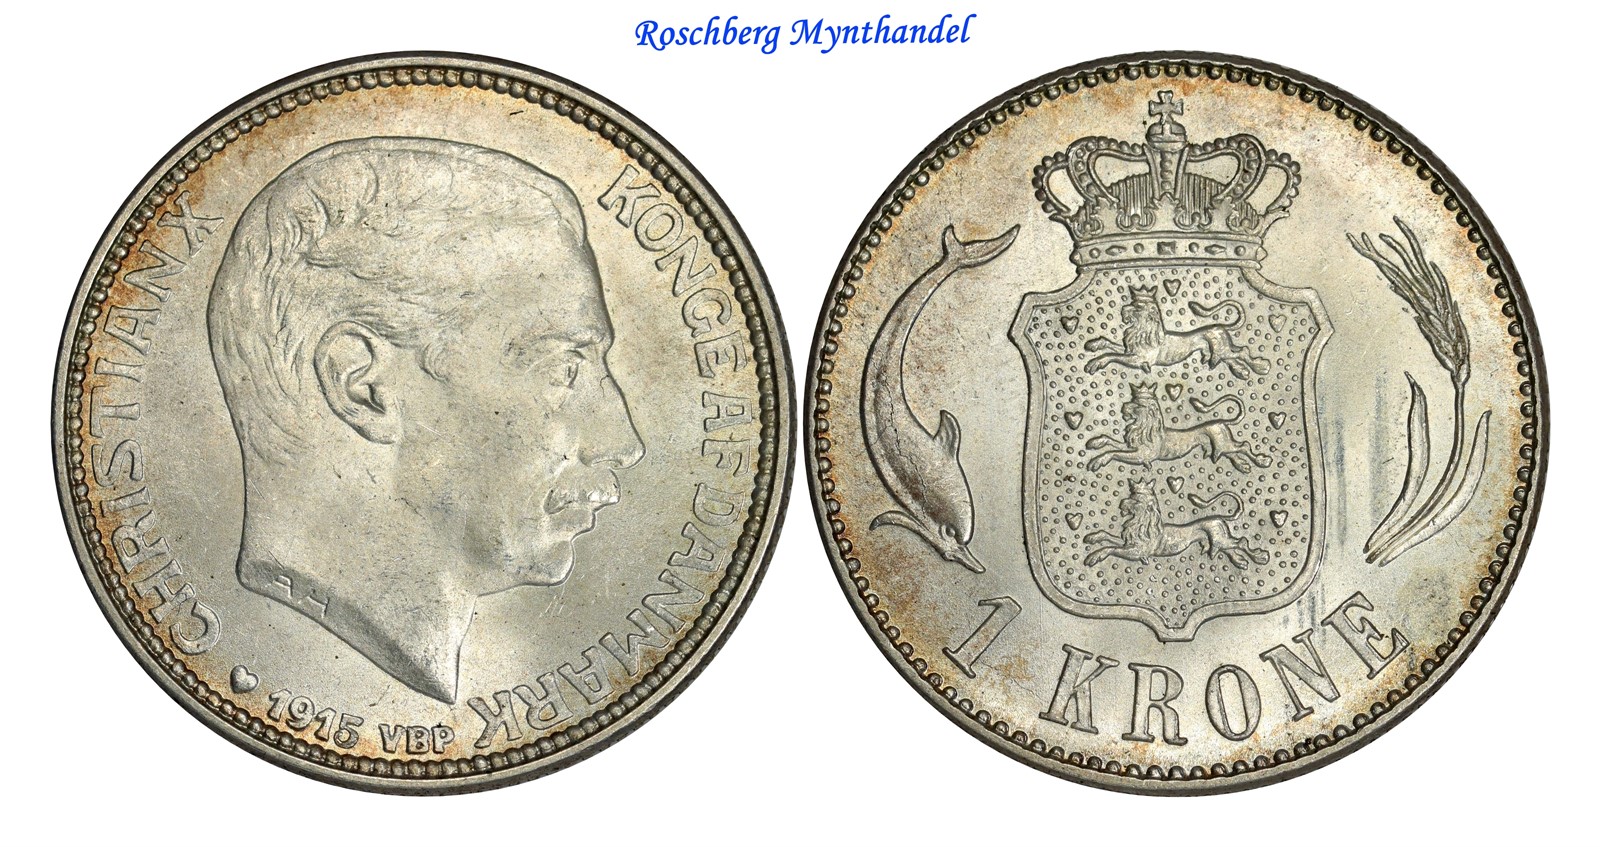 DENMARK. 1 Krone 1915 UNC